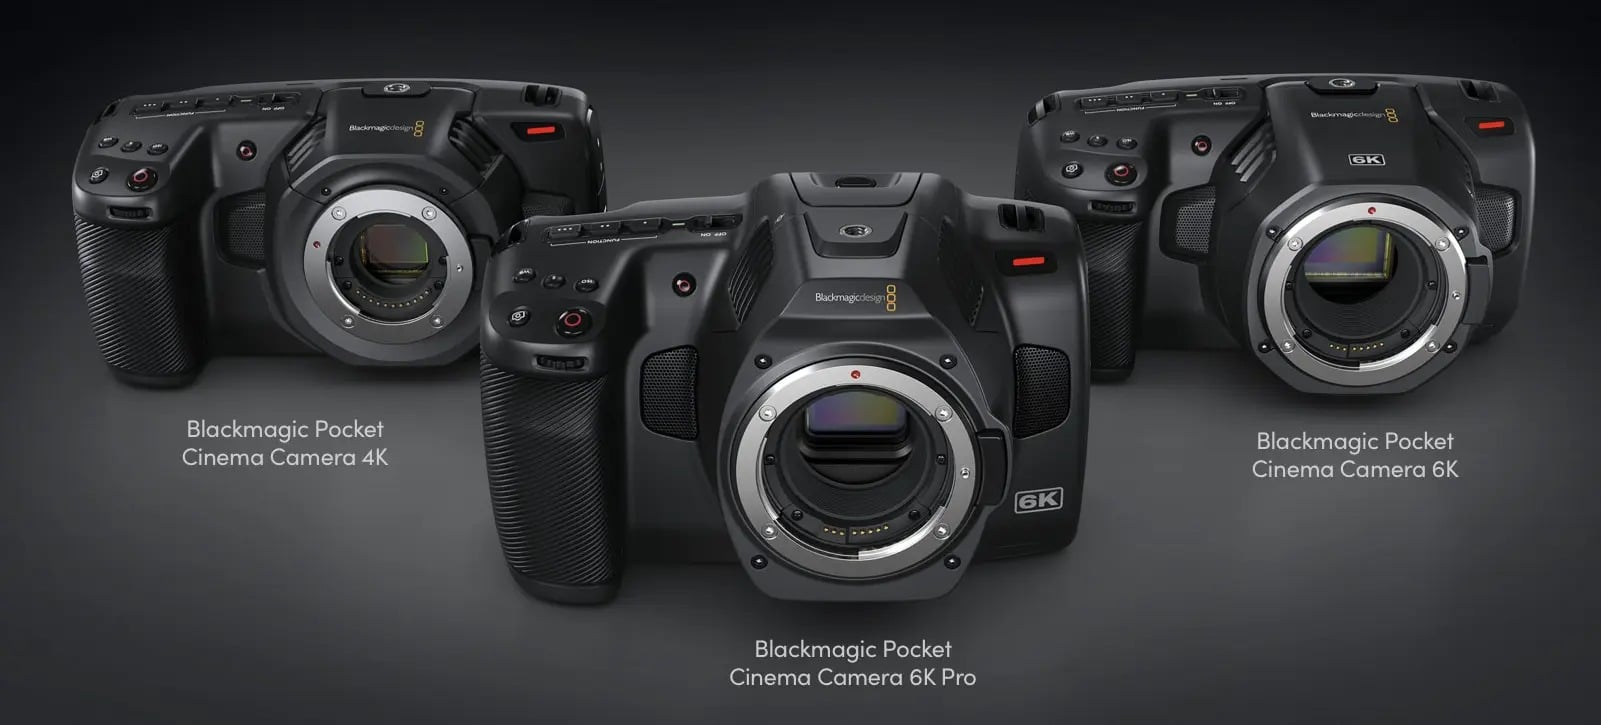 Blackmagic Design ra mắt Pocket Cinema Camera 6K Pro mới có filter ND tích hợp, có màn hình xoay lật